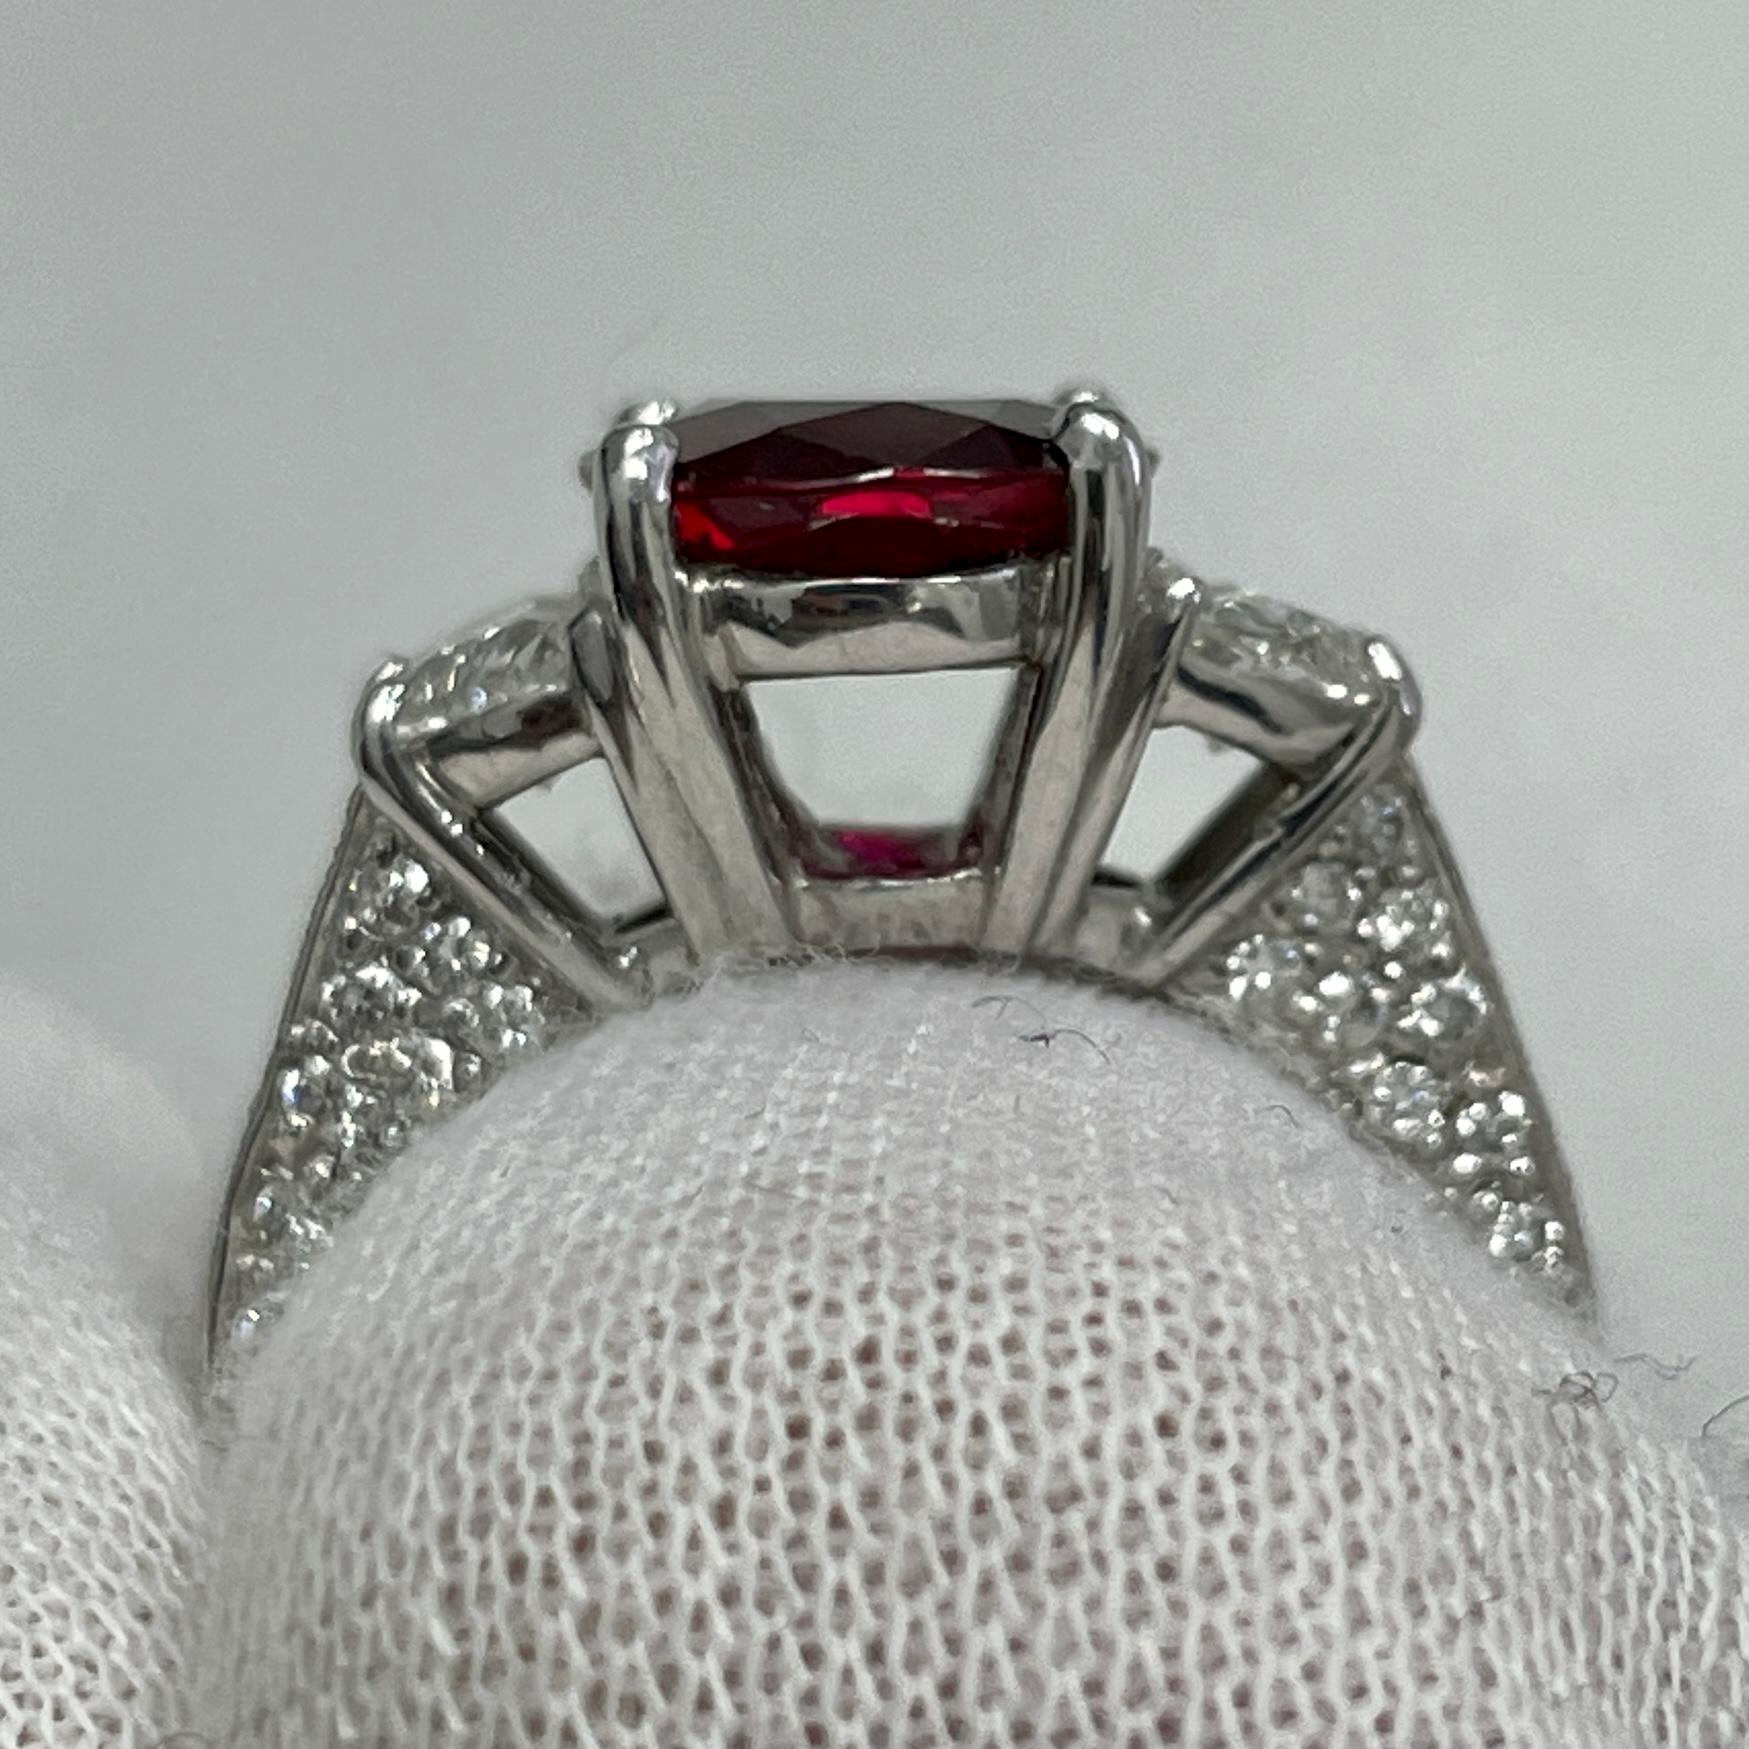 Dies ist ein unglaublich funkelnder Rubin in einem Platinring mit strahlend weißen Halbmond-Diamanten, signiert von JB Star. Geeignet für jede Gelegenheit!